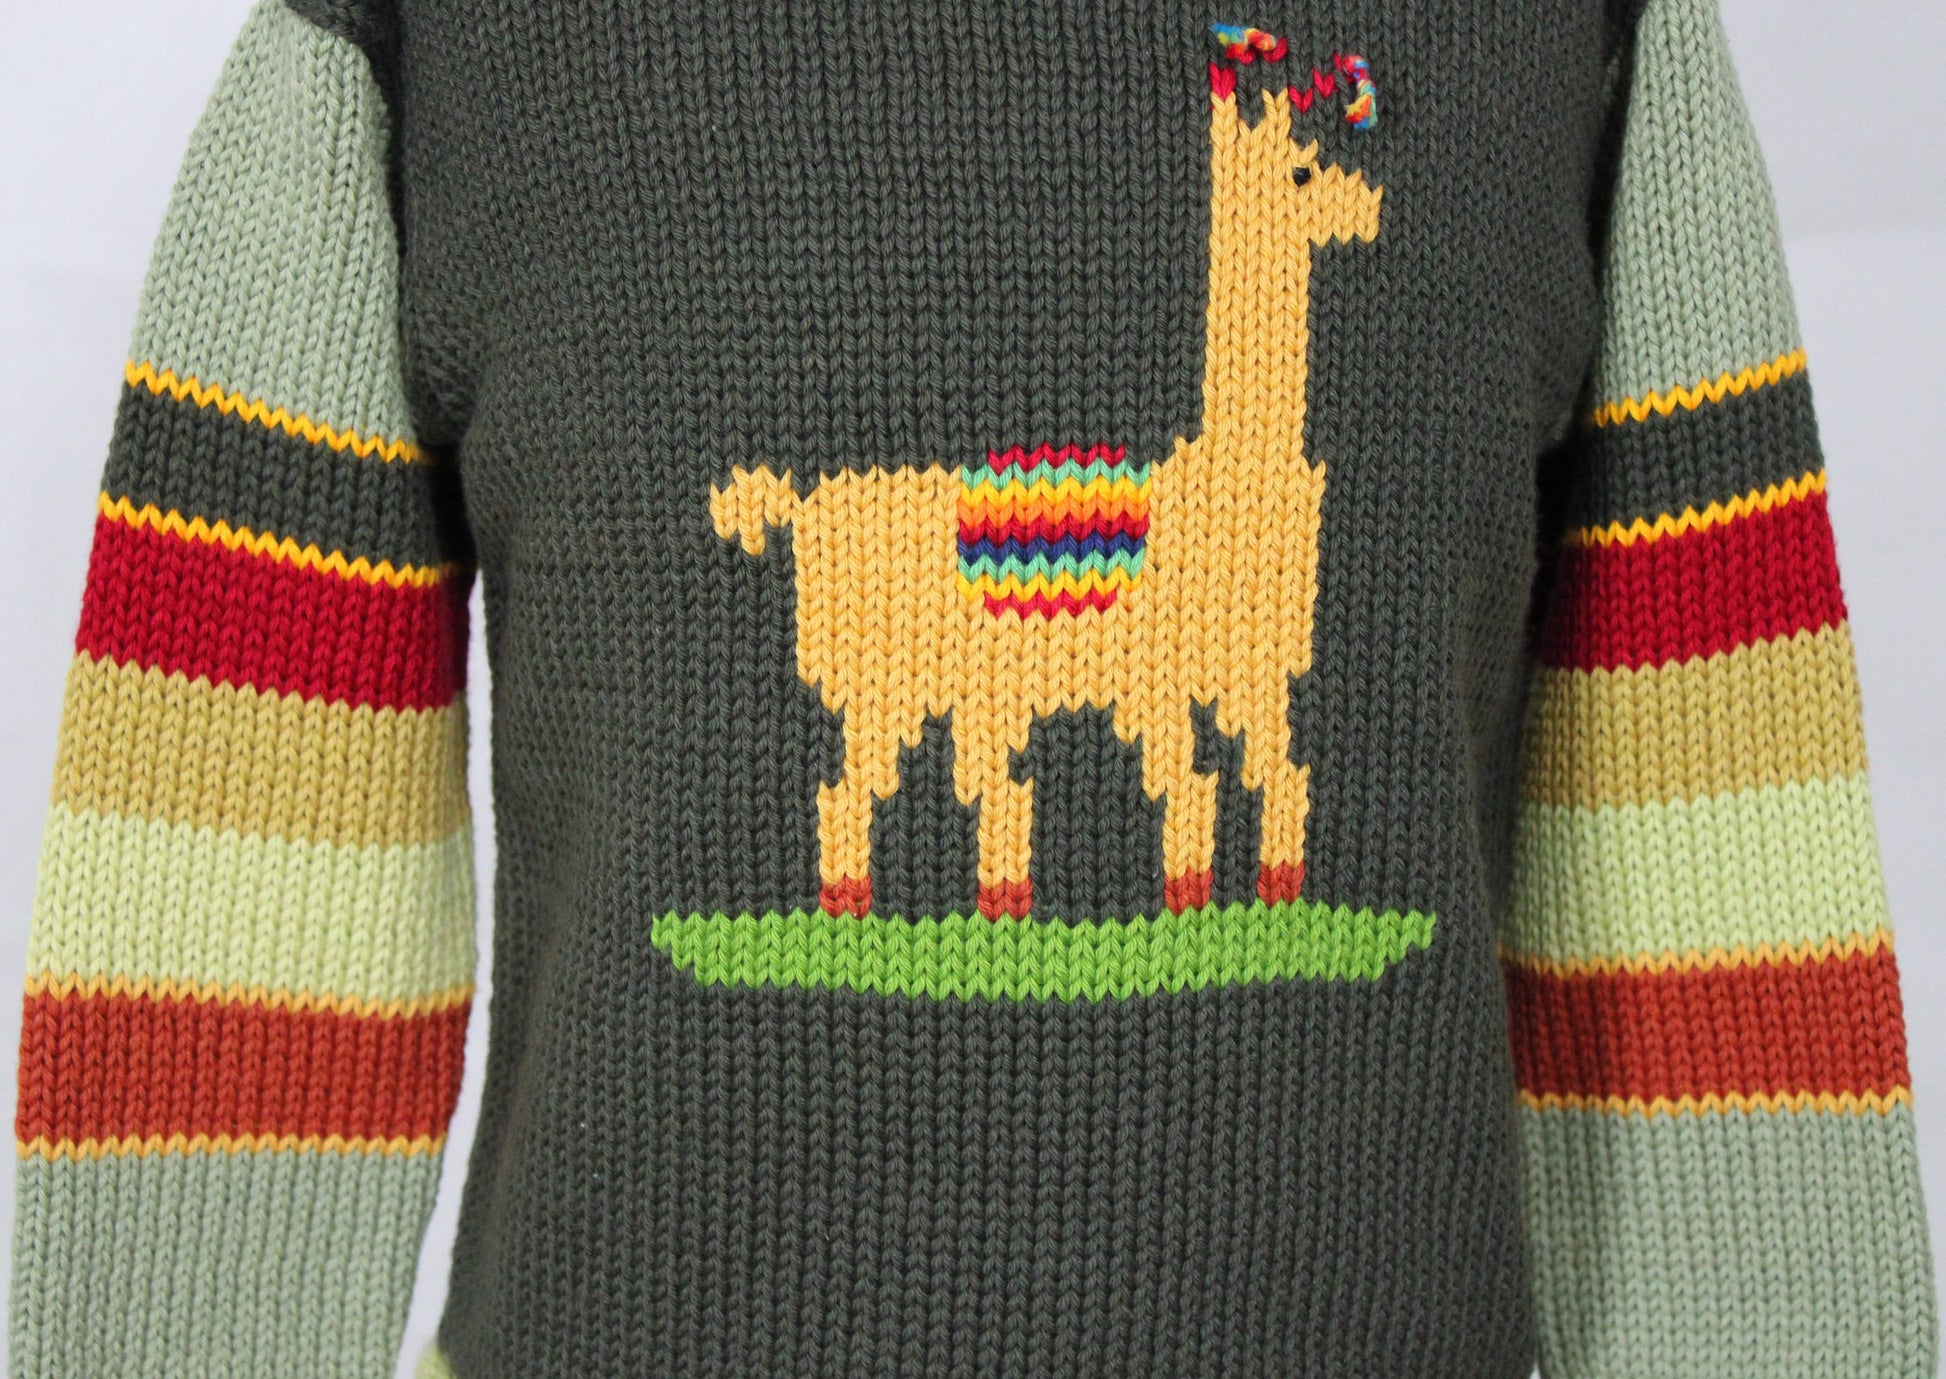 Kinderpullover 110/115 100% Baumwolle Strickpullover warm Wollpullover Winterpullover Geburtstag handgemacht Peru Ostergeschenk Kind